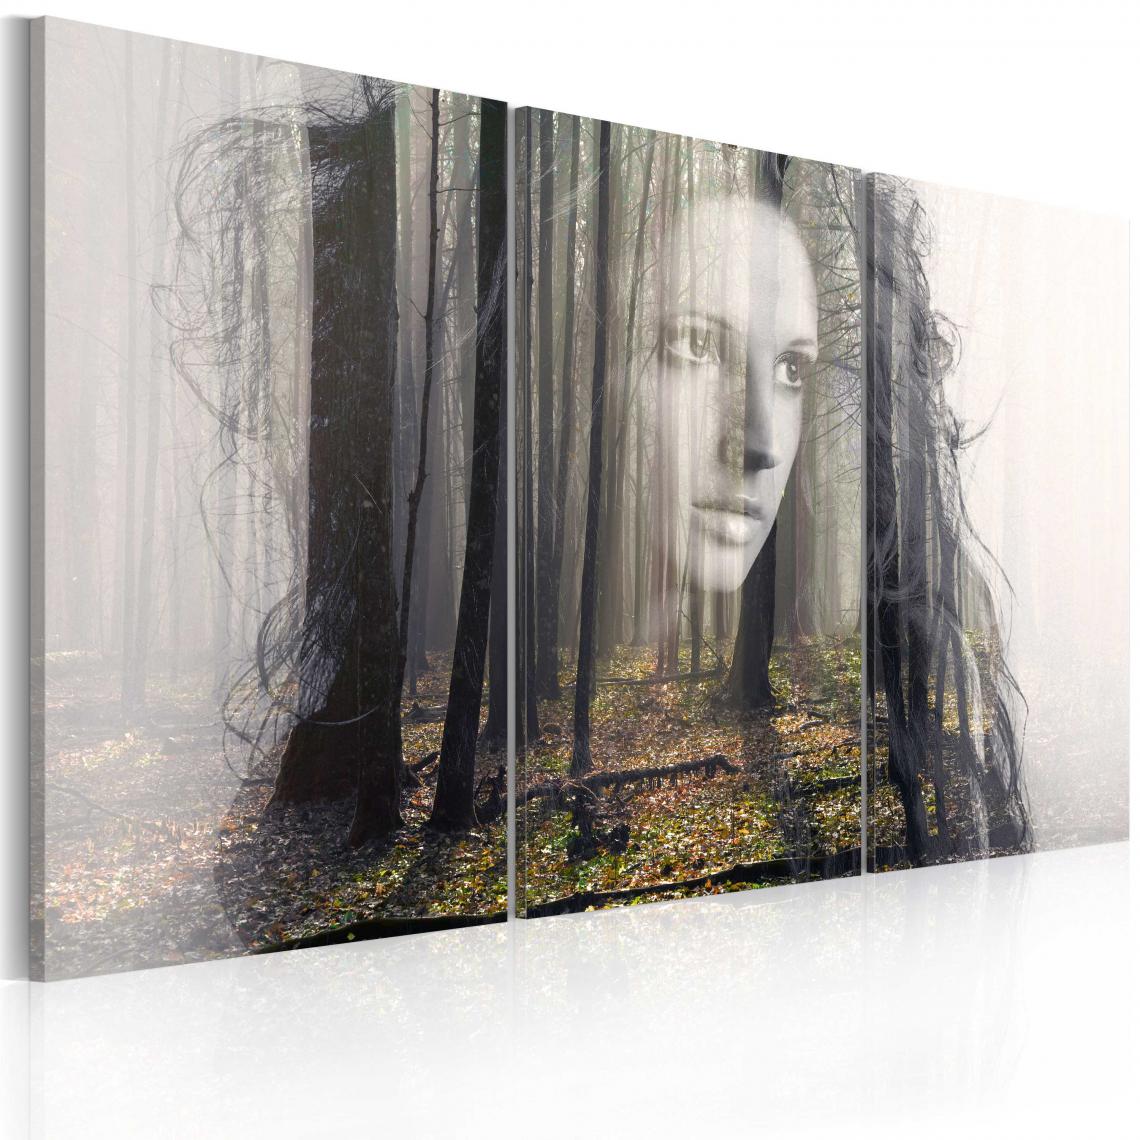 Decoshop26 - Tableau sur toile en 3 panneaux décoration murale image imprimée cadre en bois à suspendre Nymphe de la forêt 60x40 cm 11_0007372 - Tableaux, peintures